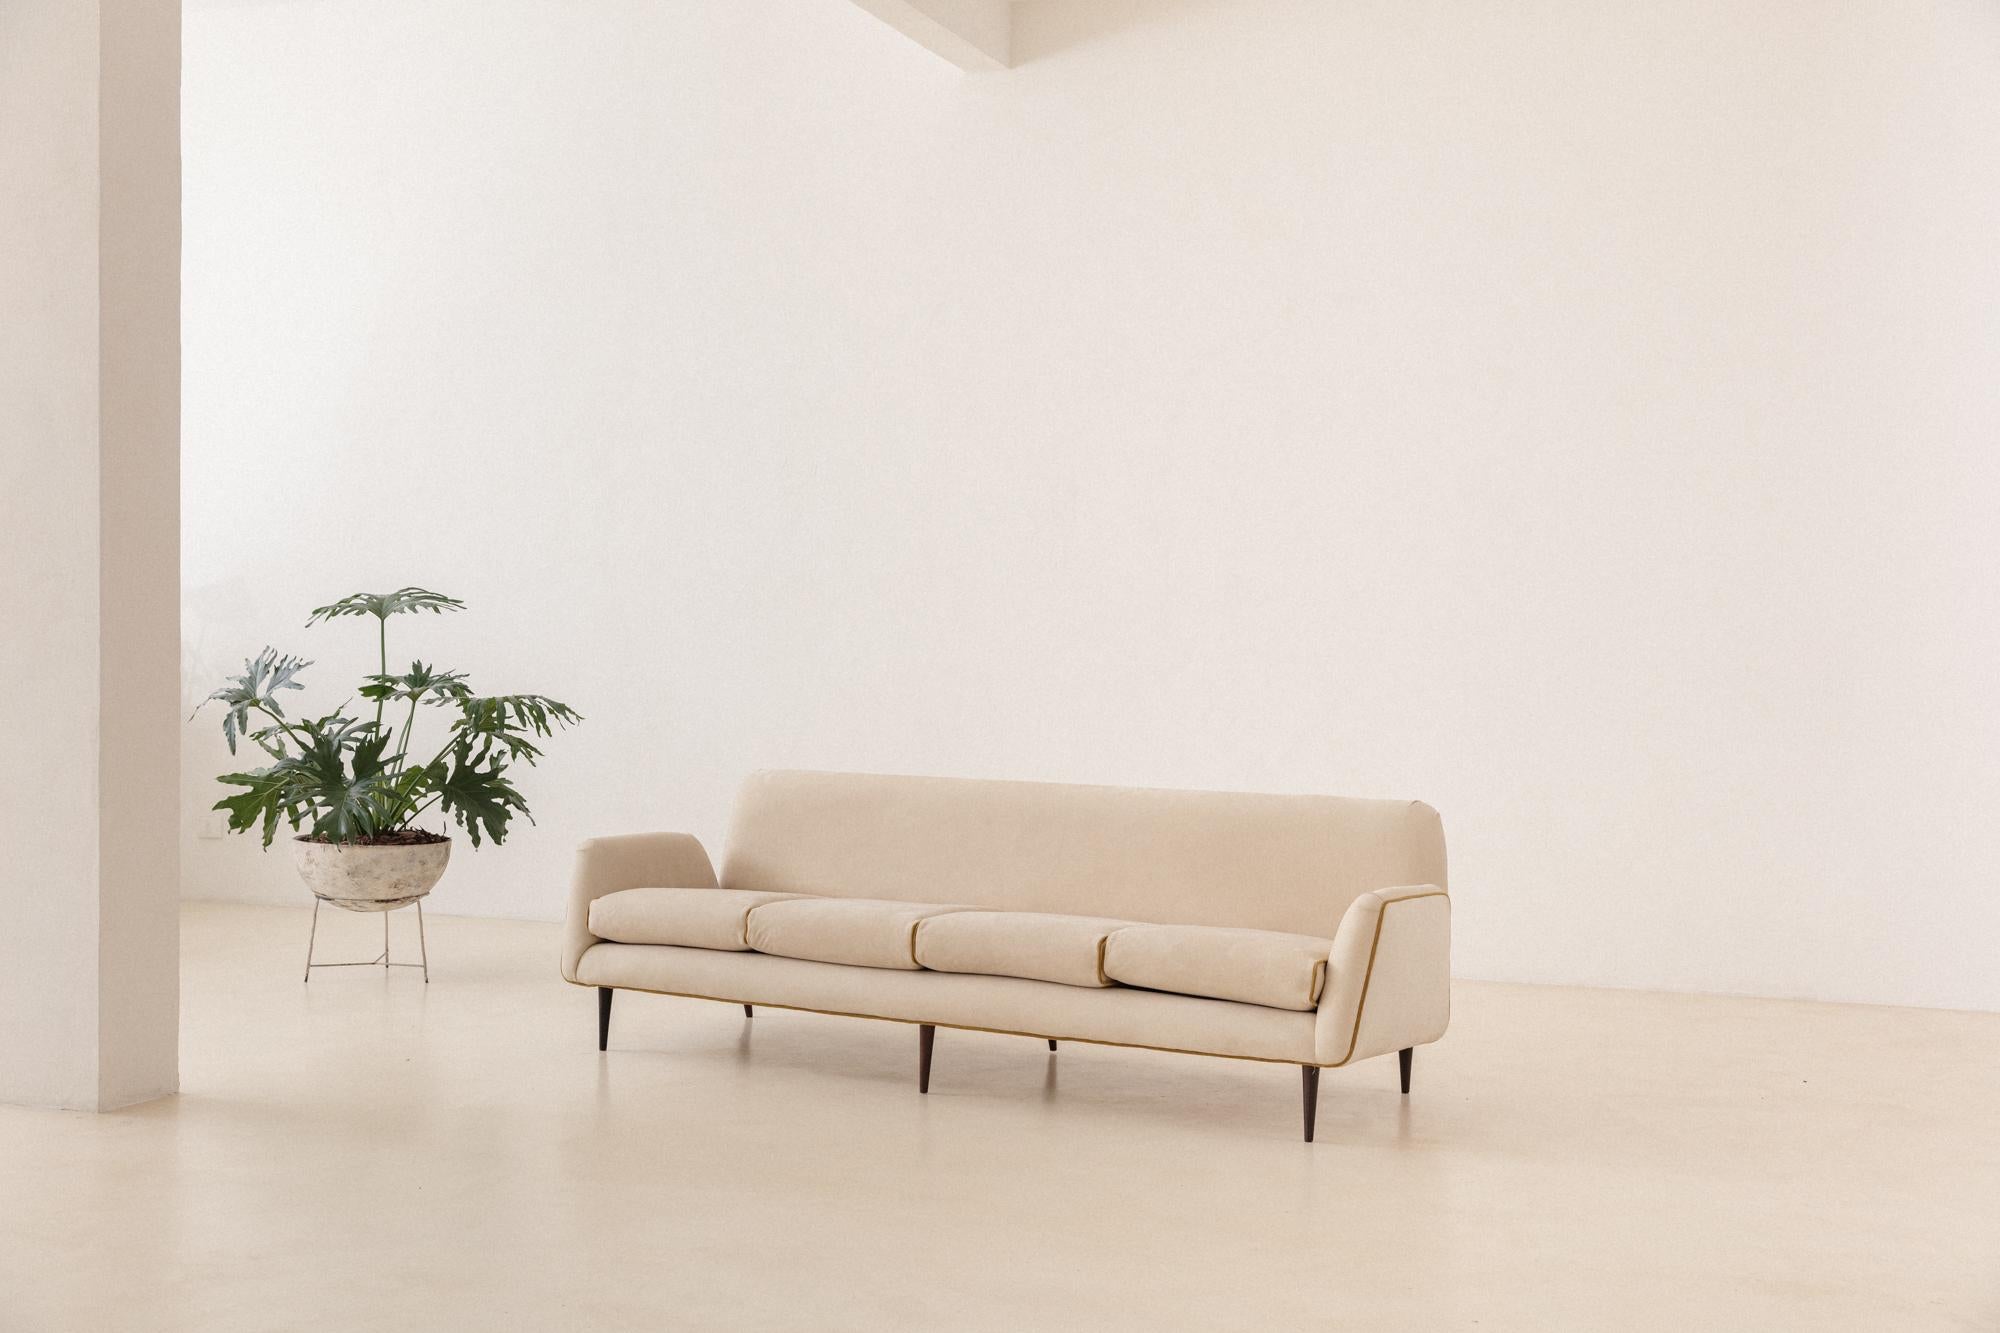 Dieses seltene Sofa wurde 1955 entworfen und von Forma hergestellt, einem Unternehmen, das von Carlo Hauner (1927-1996) und Martin Eisler (1913-1977) geleitet wurde. Dieses Stück ist eine Ikone und illustriert neben dem dazugehörigen Sessel einige